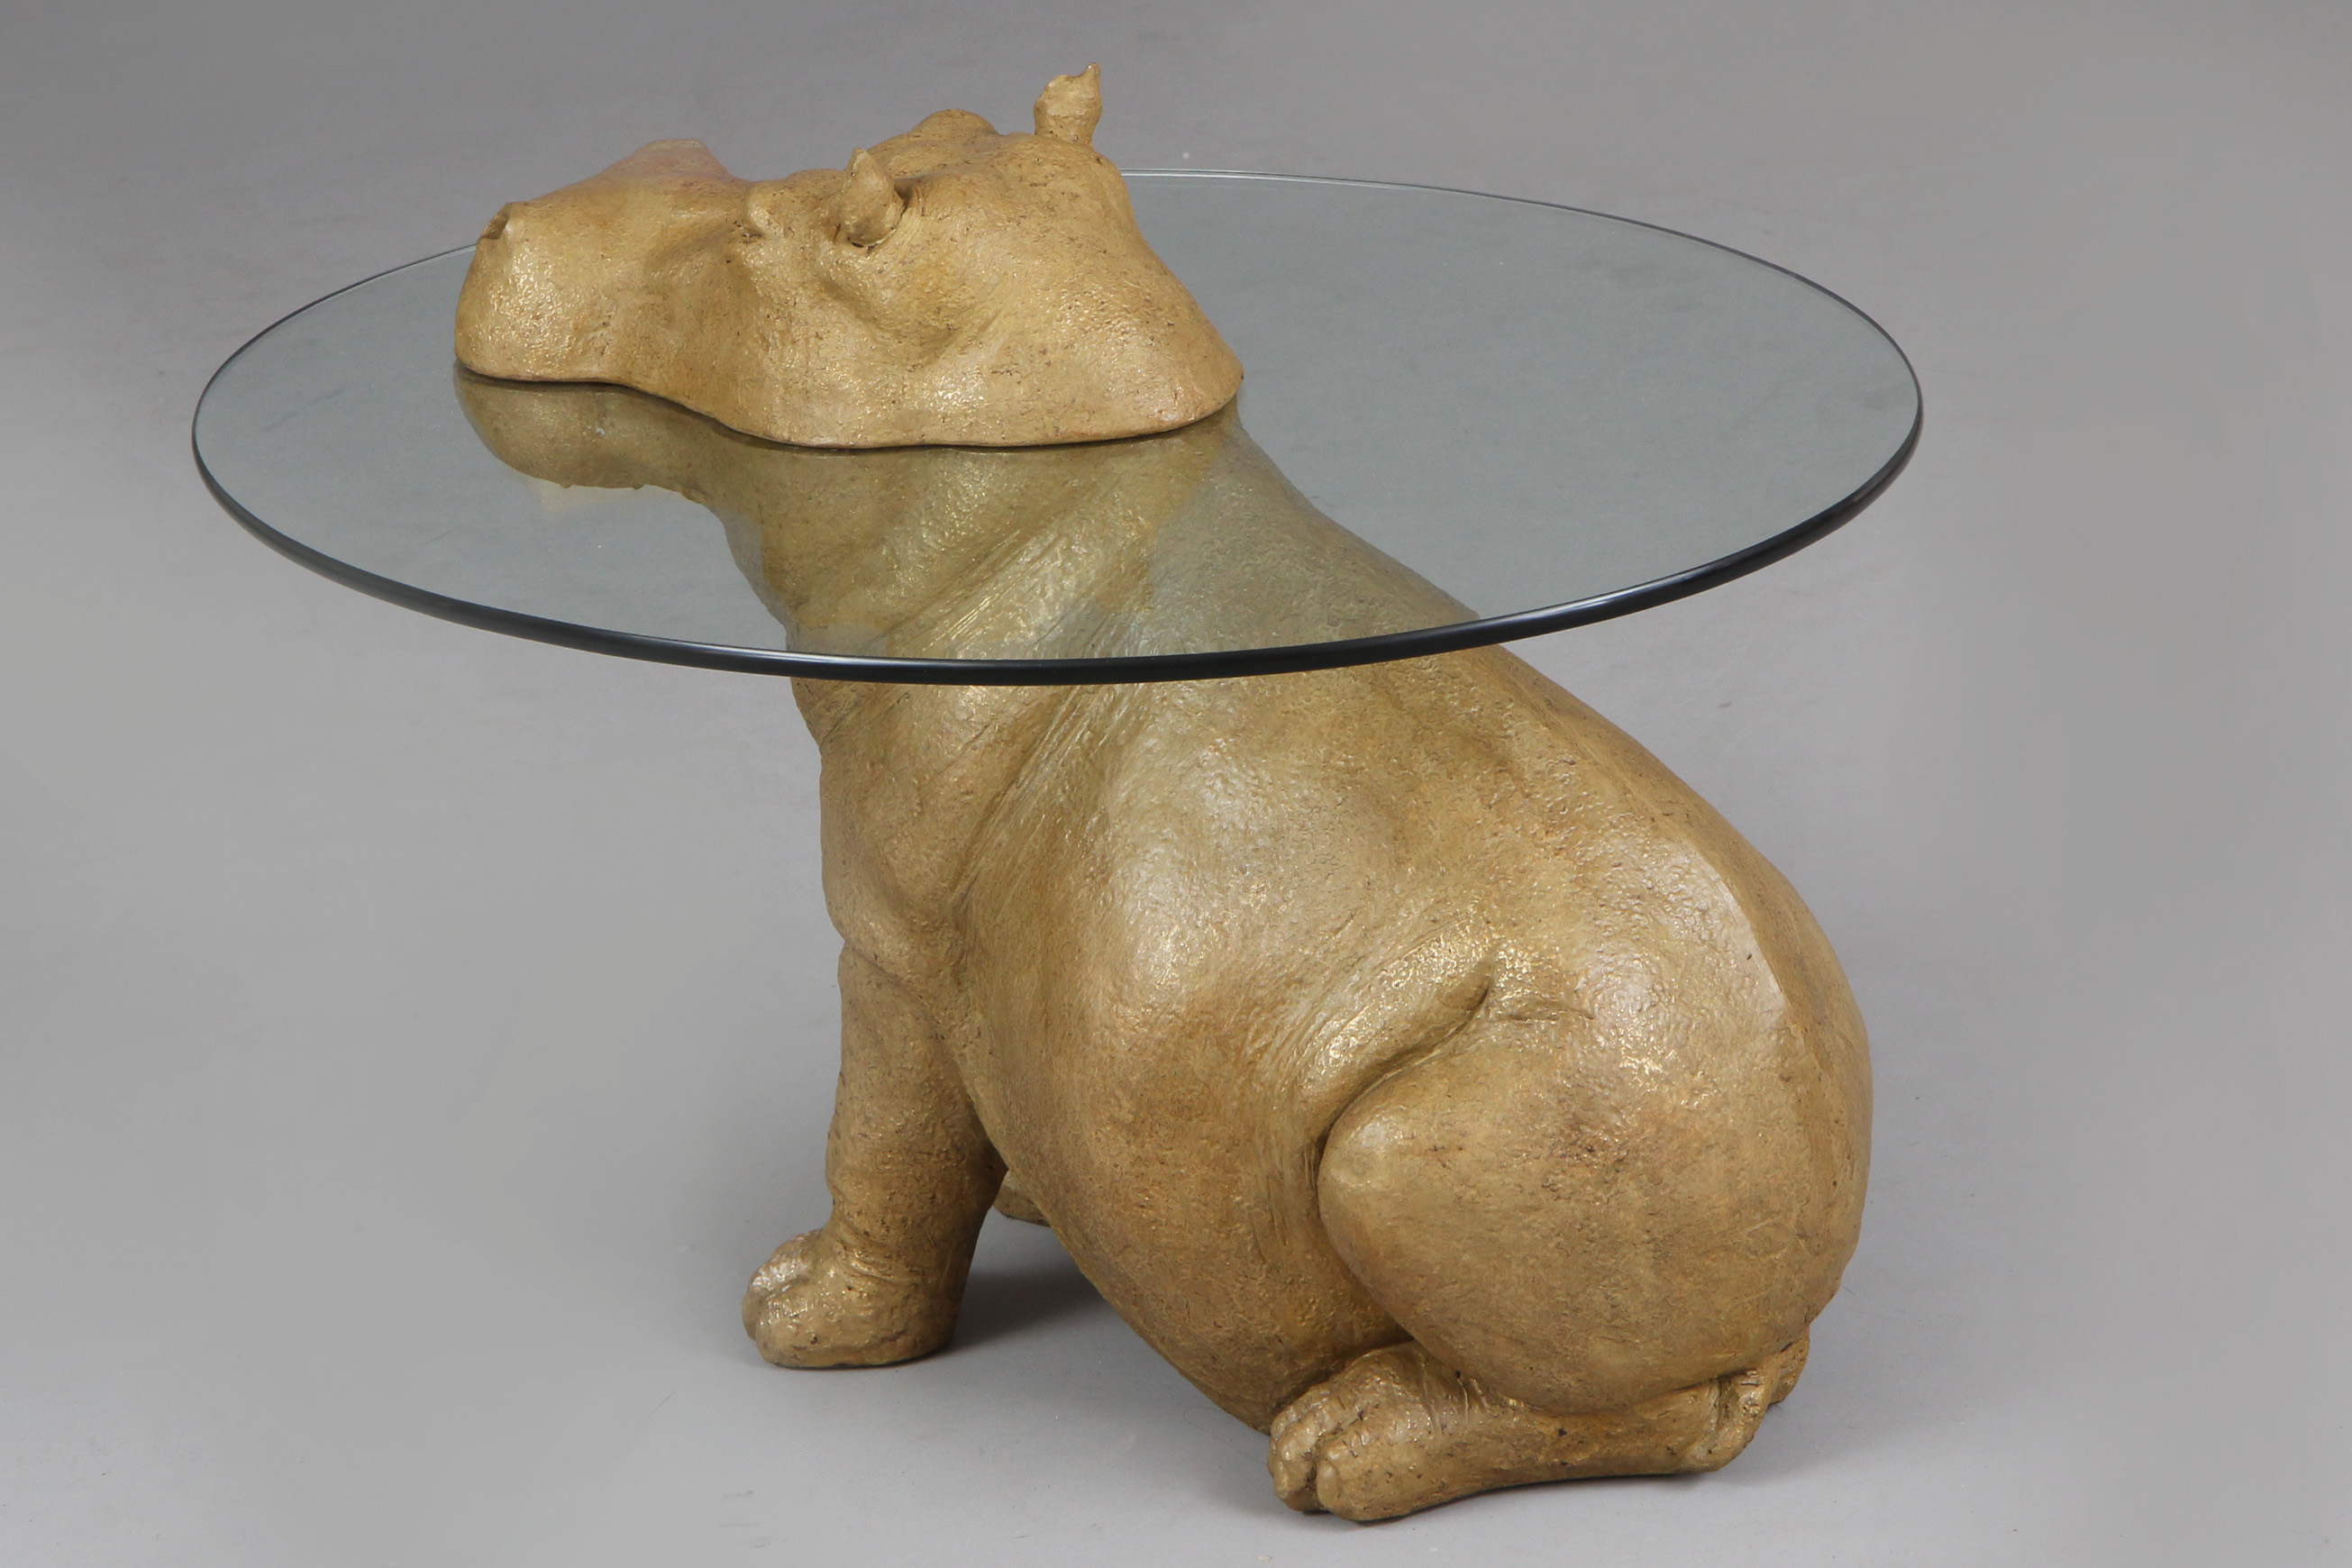 Beistelltisch mit Figur eines Nilpferds (Hippopotamus) - Image 2 of 3